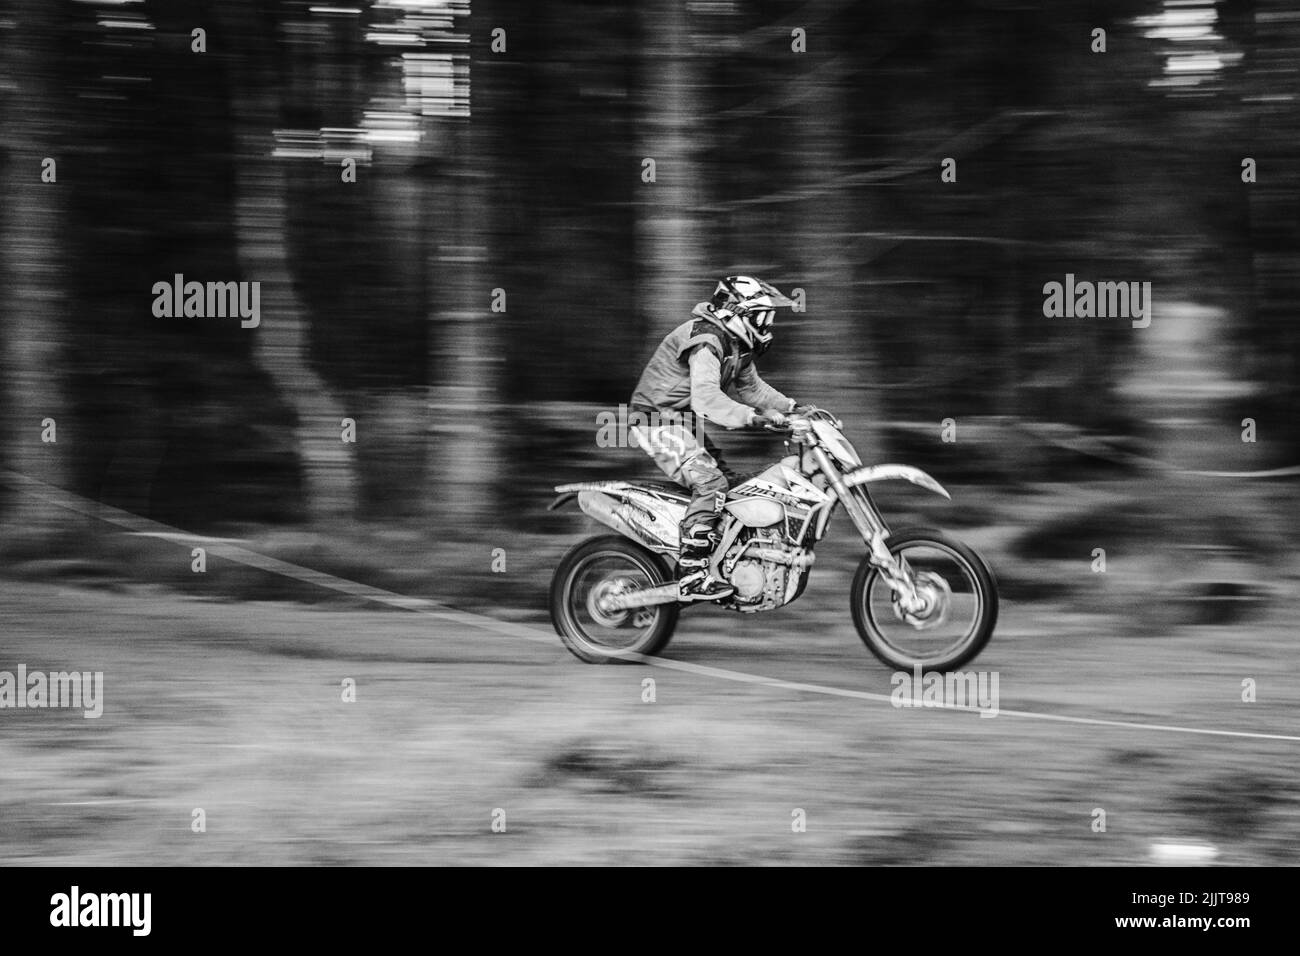 Una fotografía en escala de grises de un motociclista que monta en el bosque durante el motocross Foto de stock